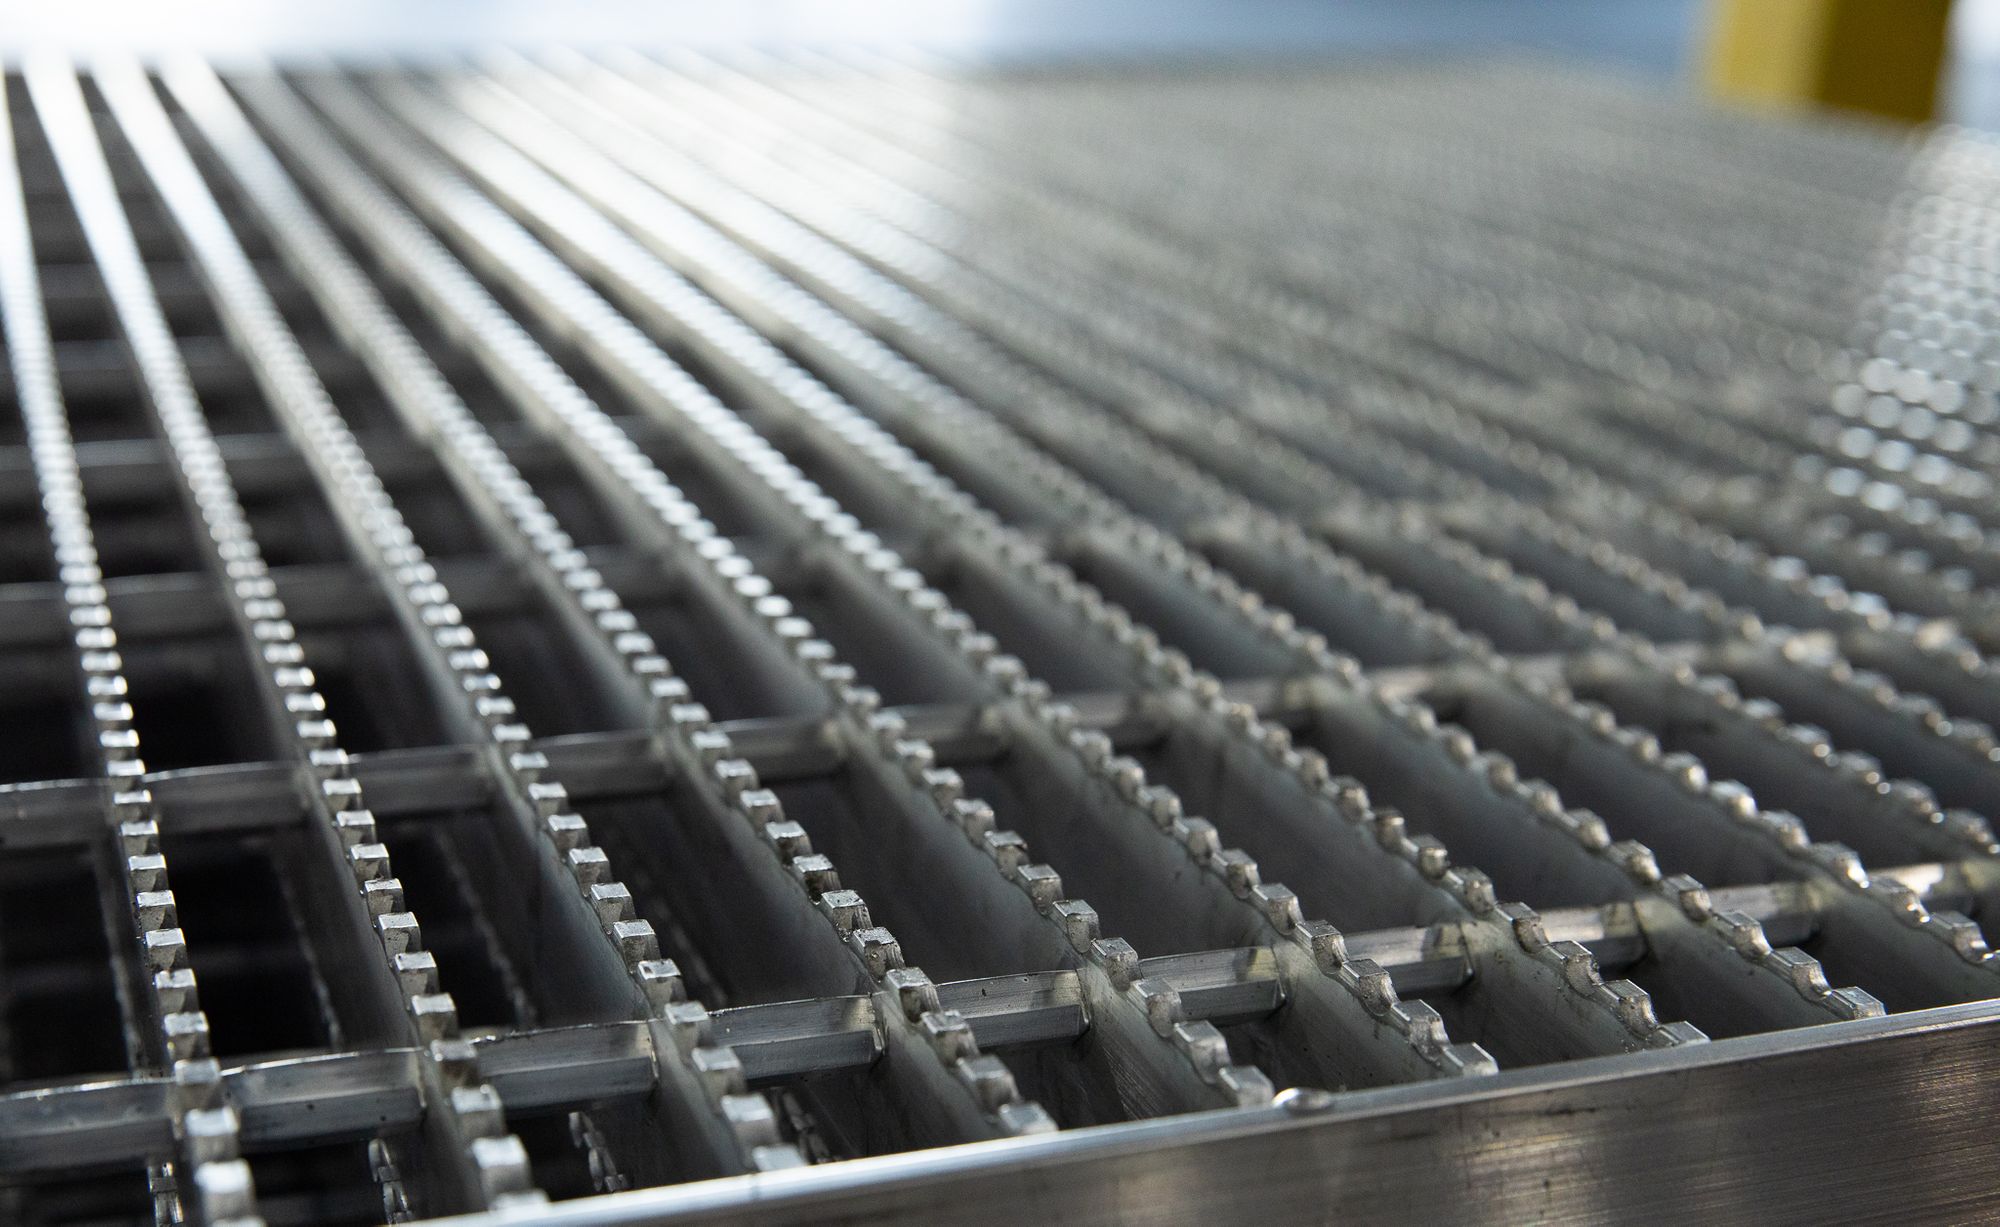 A close-up photo of Aluminum Bar Grating.